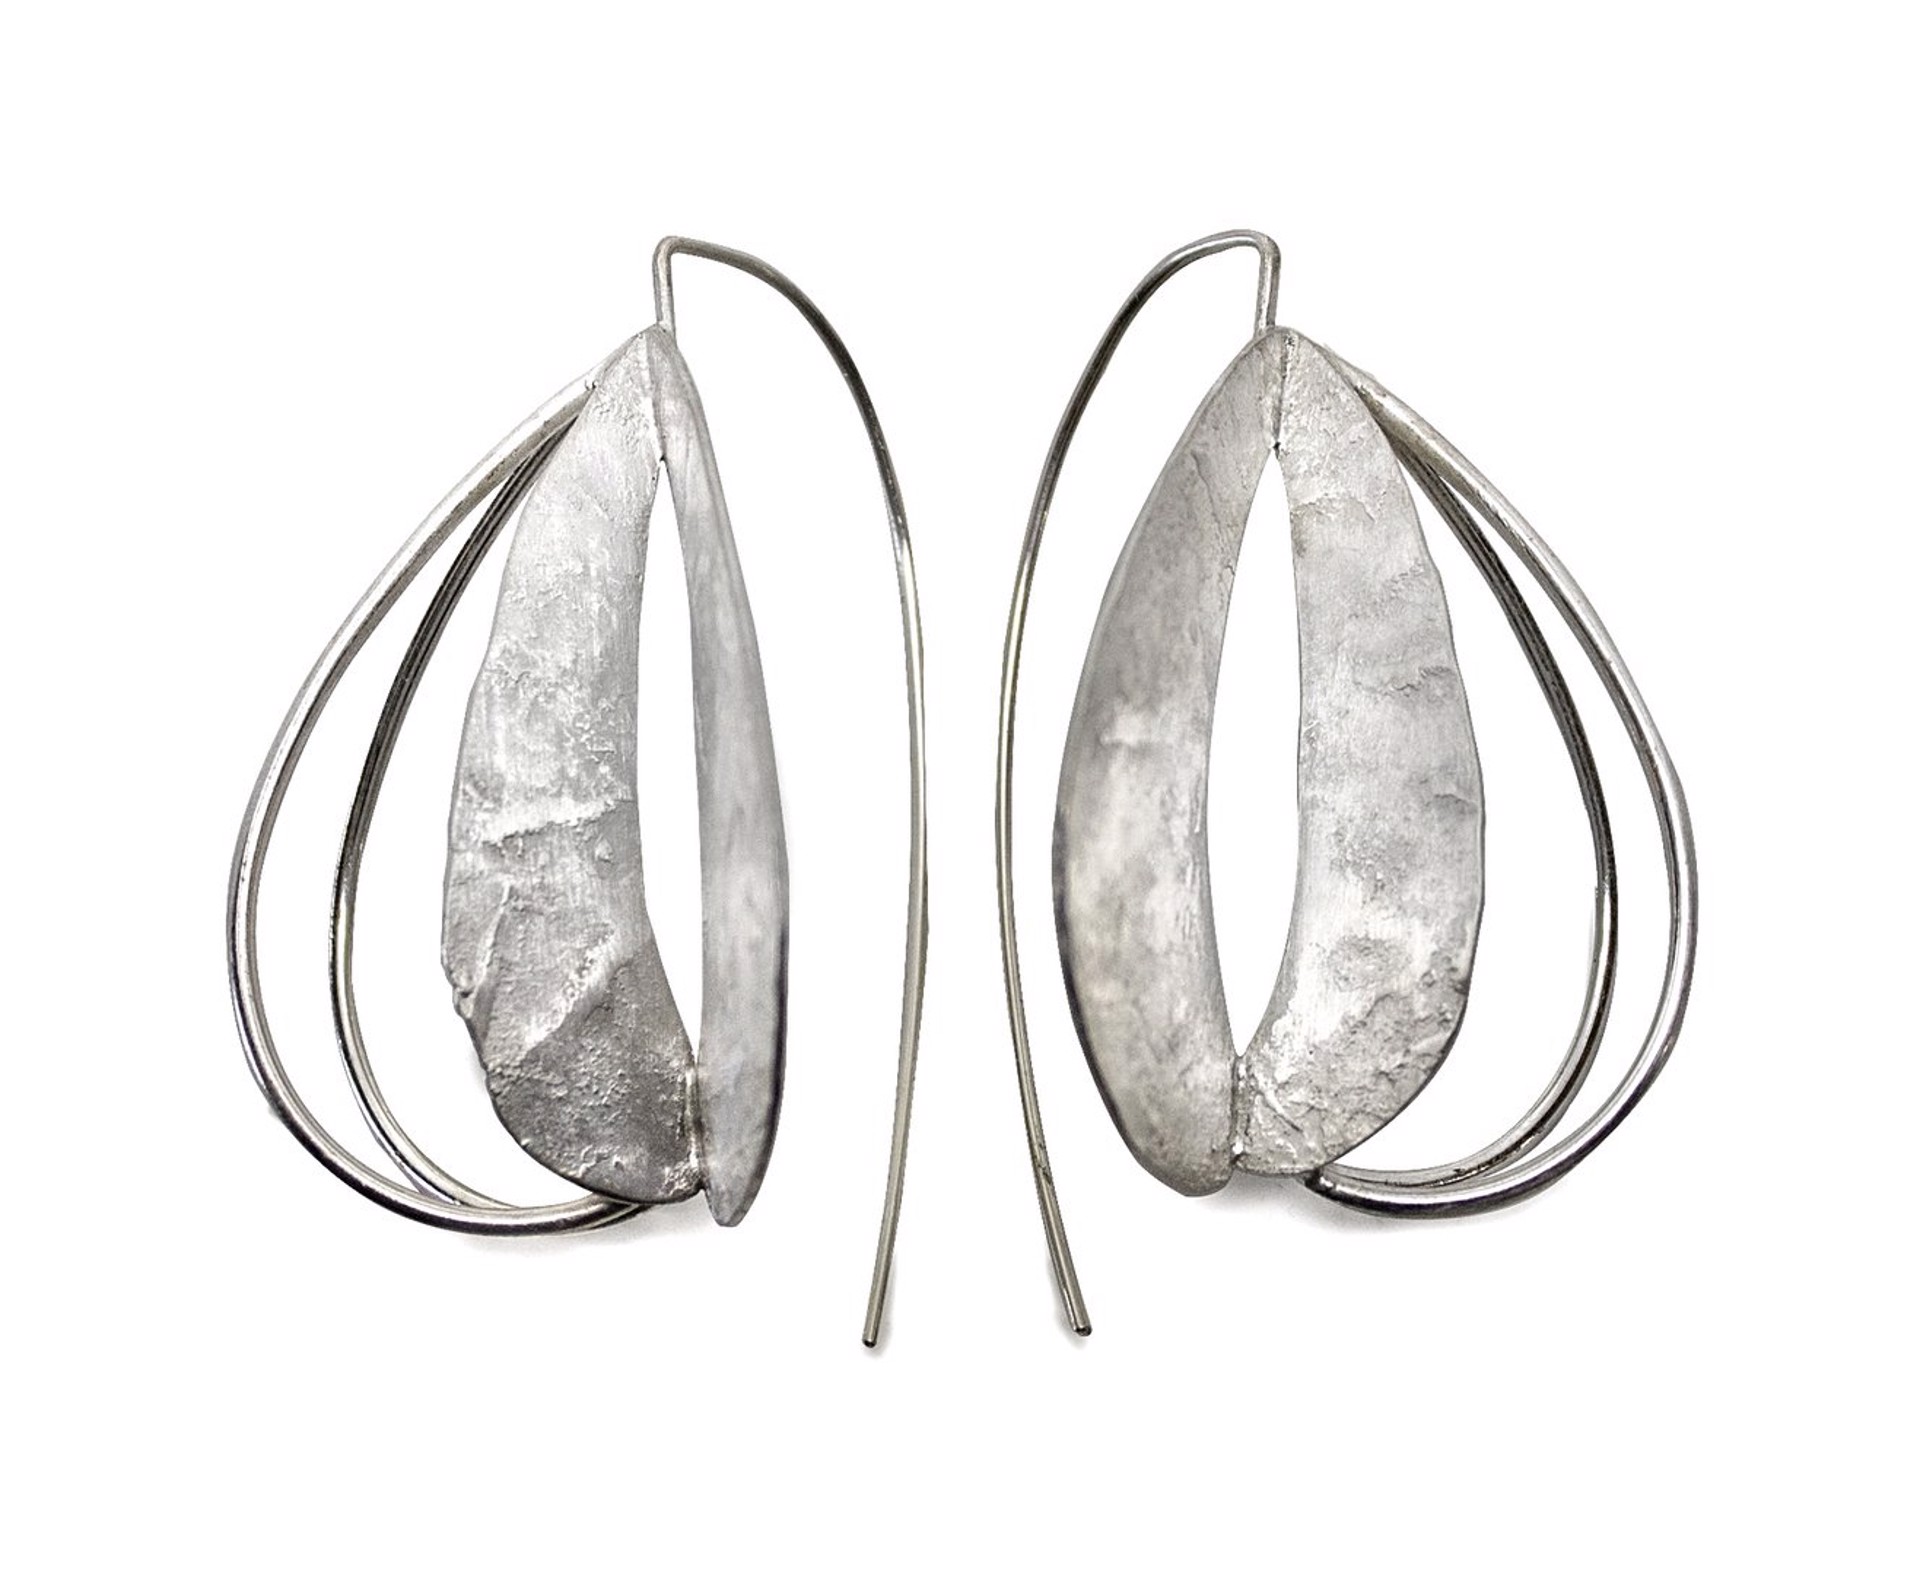 Lantern Earrings by Leia Zumbro